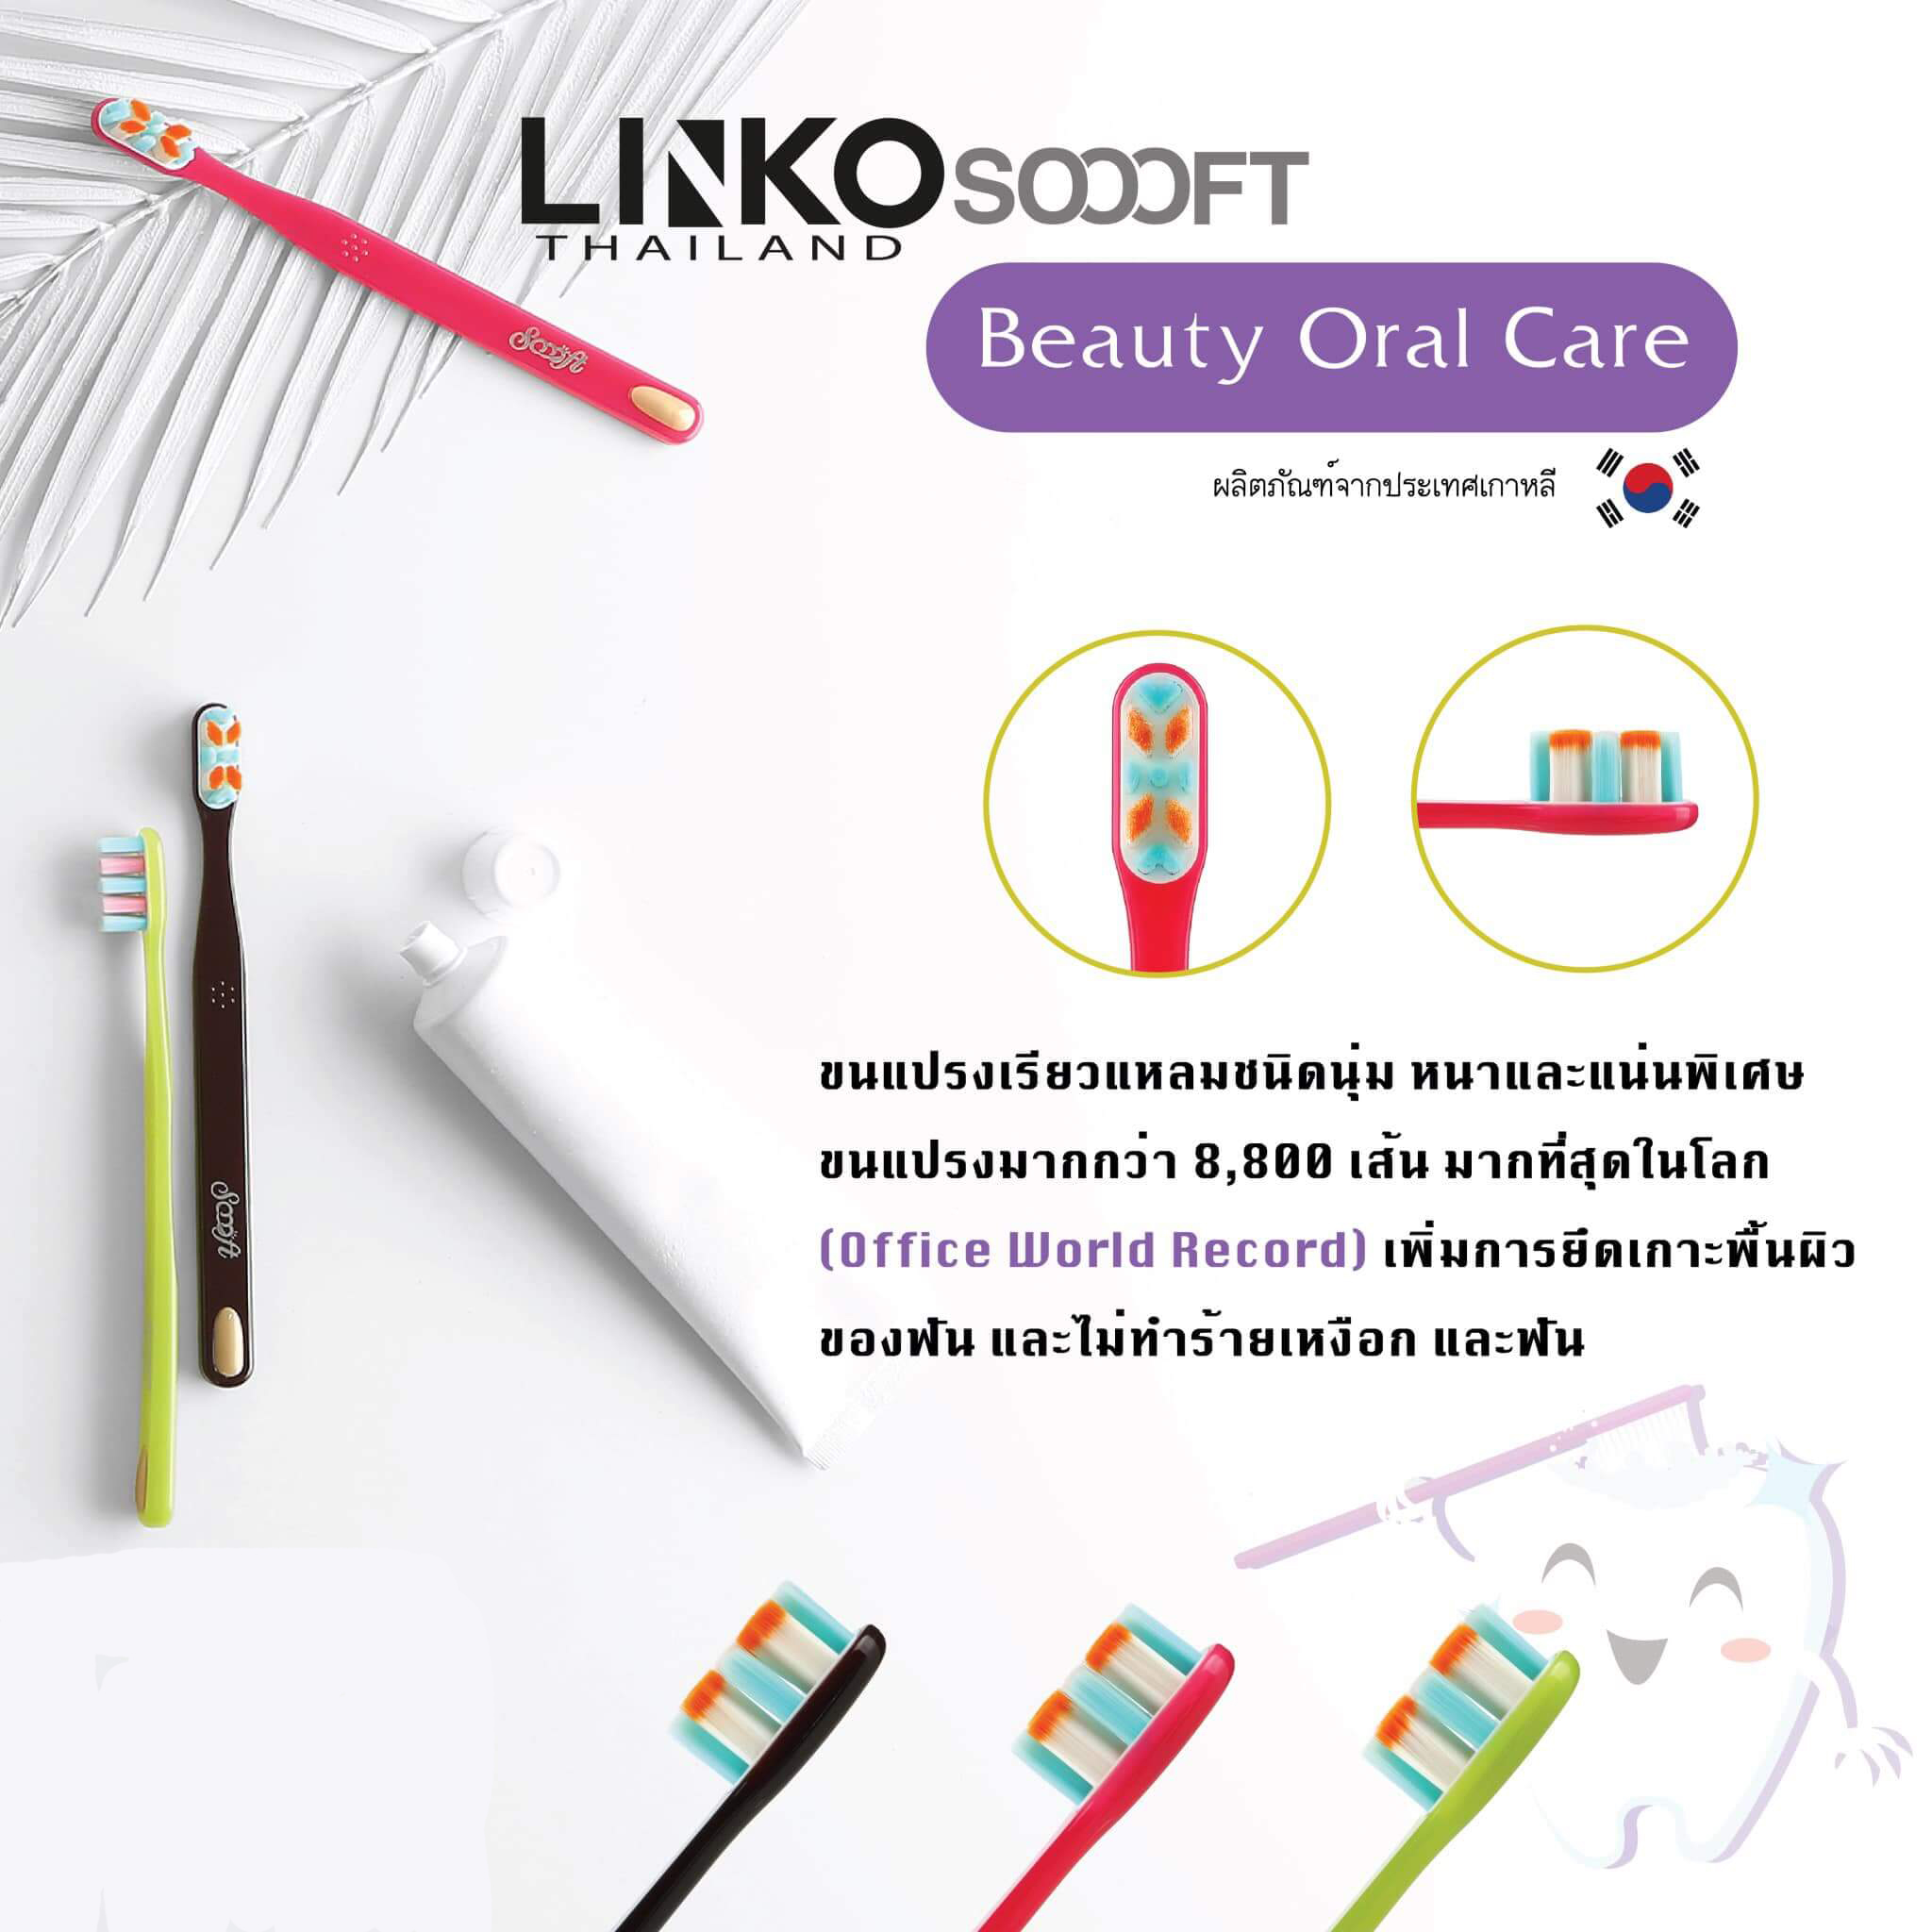 Linko Scoooft รุ่น Beauty Oral Care     แปรงสีฟัน Linko Soooft รุ่น BEAUTY Oral Careคุณสมบัติพิเศษทุกชิ้นผลิตด้วยมือ ขนแปรงตัว X ที่กว้าง ช่วยเพิ่มการยึดเกาะพื้นผิวของฟัน ขนที่นุ่มพิเศษระดับ 3 ไม่ทำให้ระคายเคืองเหงือกและฟันเหมาะสำหรับผู้ที่มีอายุต่ำกว่า 40 ปี ที่ต้องการฟันที่ขาวสะอาดและเงางาม  ลักษณะขนแปรงขนแปรงเรียวแหลมชนิดนุ่ม หนาและแน่นเป็นพิเศษ ขนแปรงมากกว่า 8,800 เส้นมากที่สุดในโลก (Office World Record) ปลายขนแปรงหนาน้อยกว่า 0.01มม.รับประกันความพอใจ (ภายใน 7 วัน)